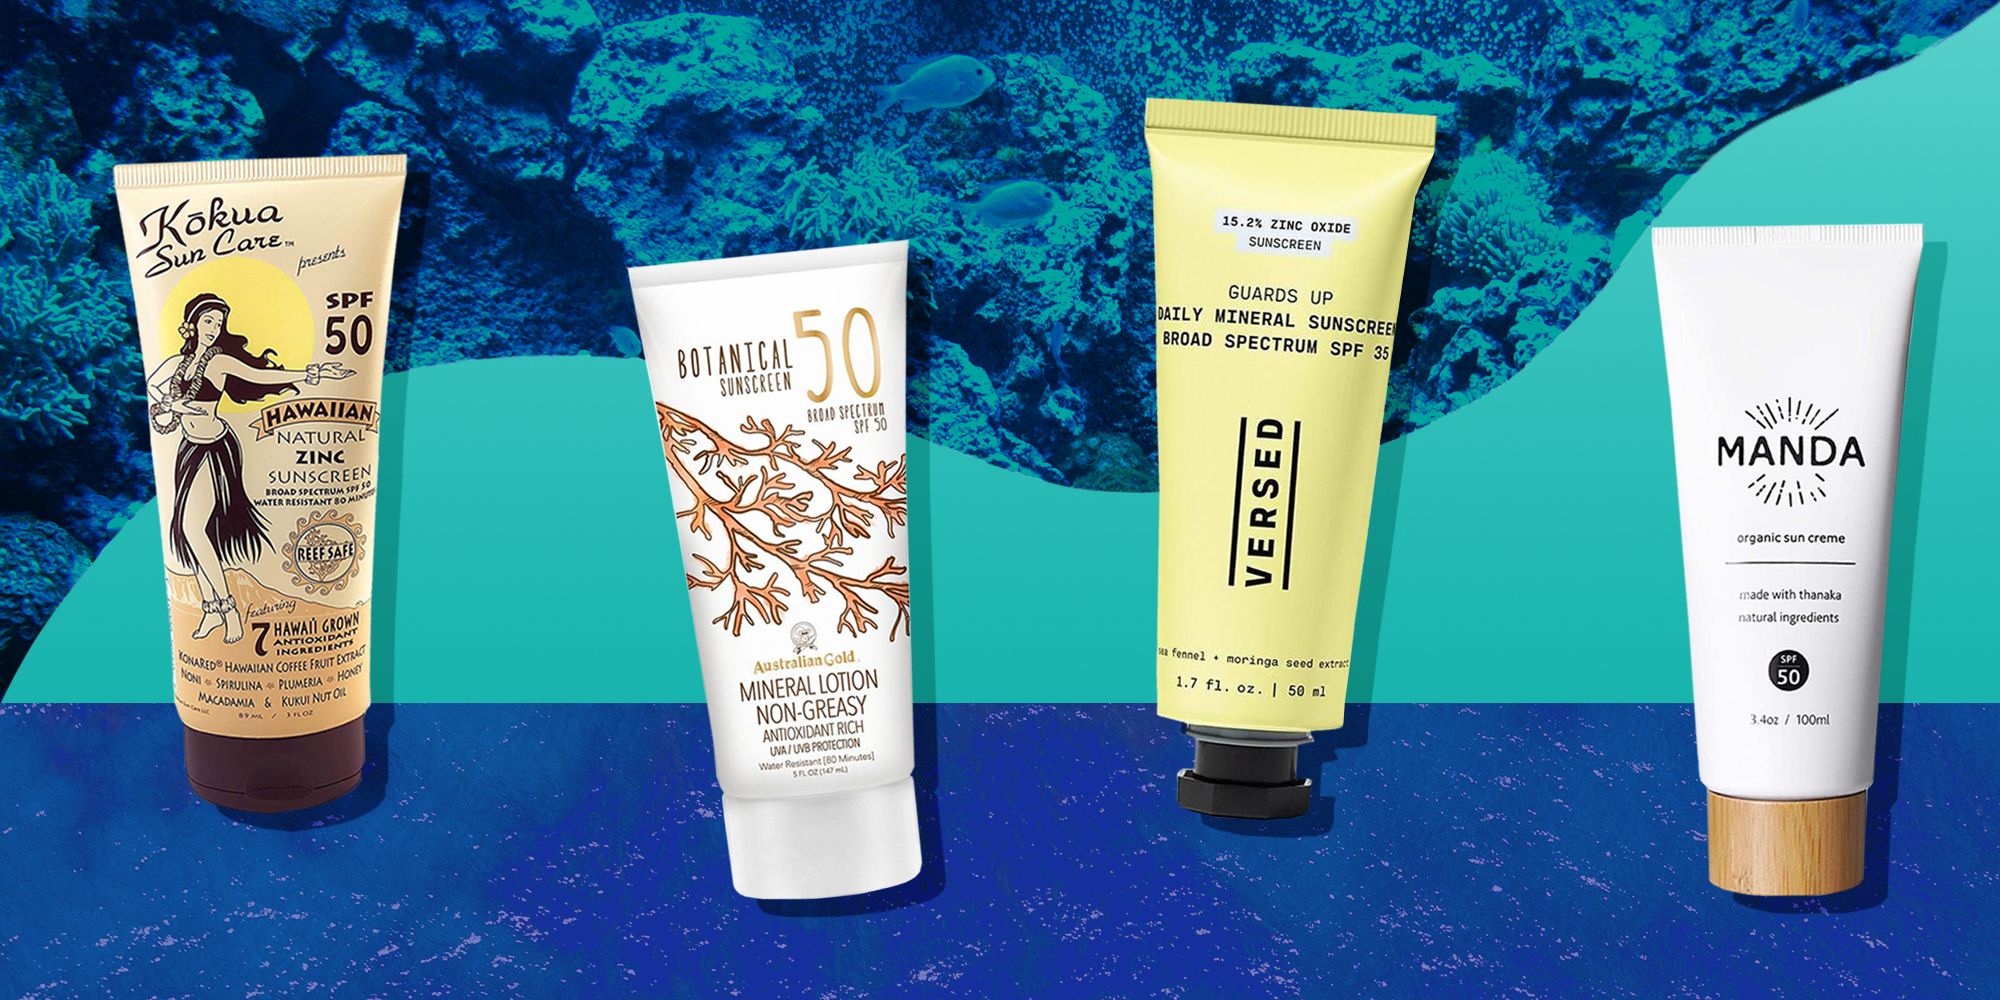 Reef Safe Sunscreen, Reef Friendly Sunscreen